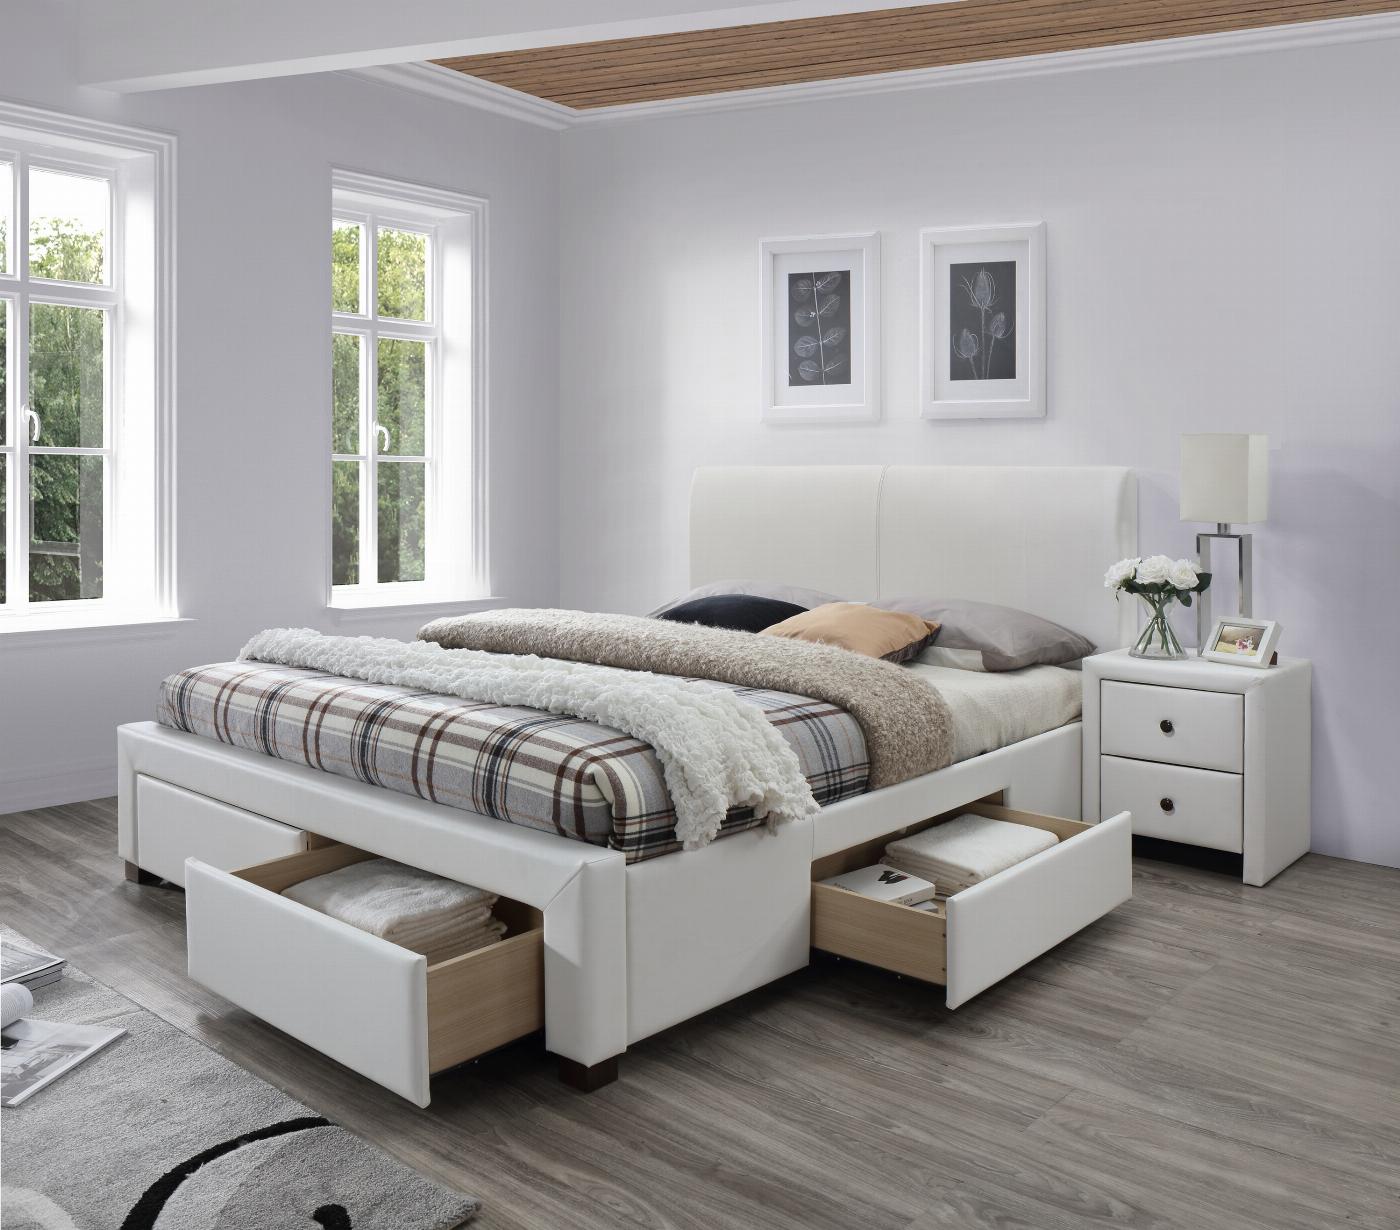 MODENA 2 łóżko tapicerowane z szufladami biały (6p=1szt)